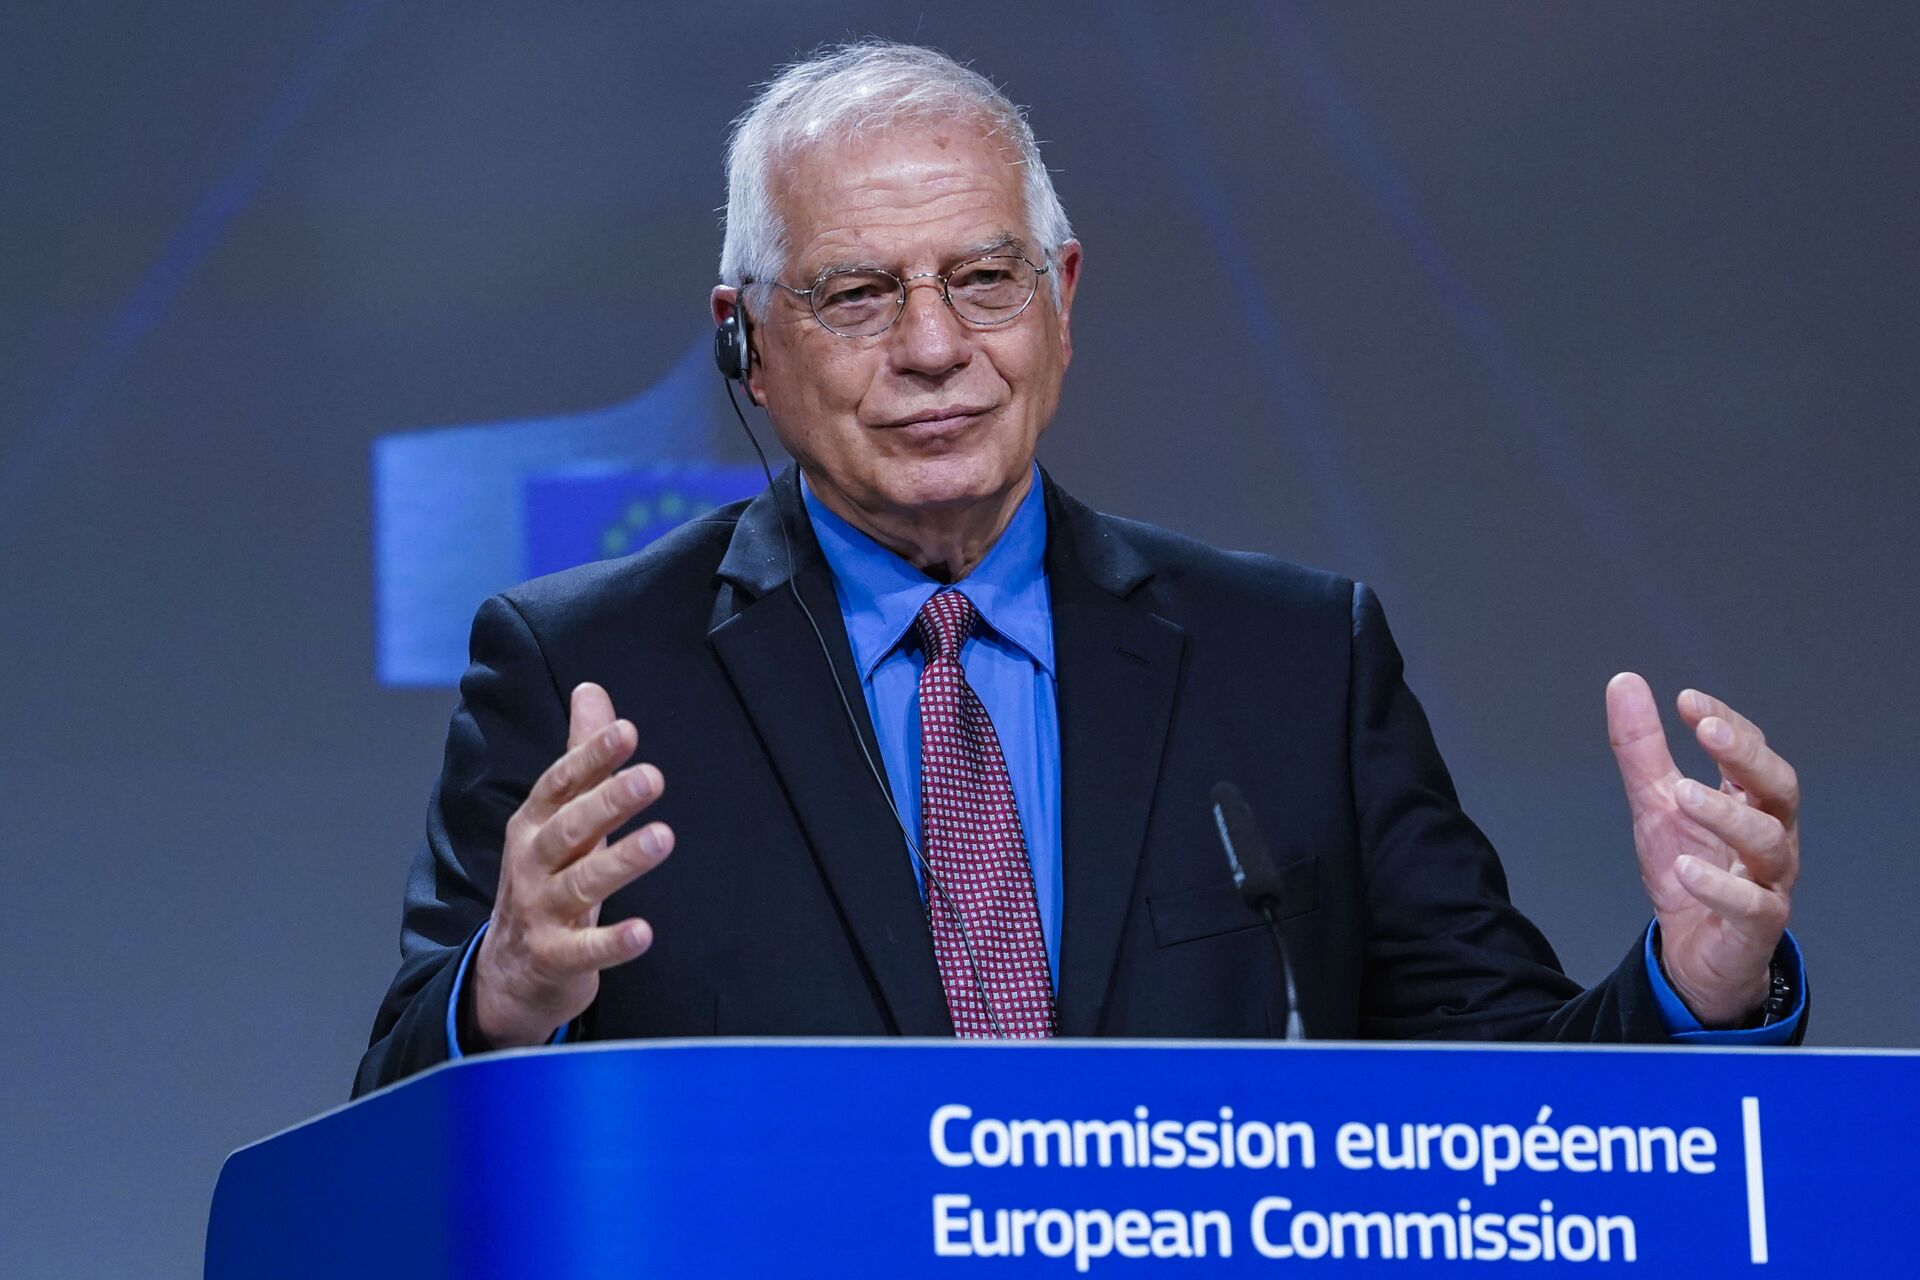 Sanções da Rússia não impedirão UE de apoiar democracia, diz Borrell - Sputnik Brasil, 1920, 01.05.2021